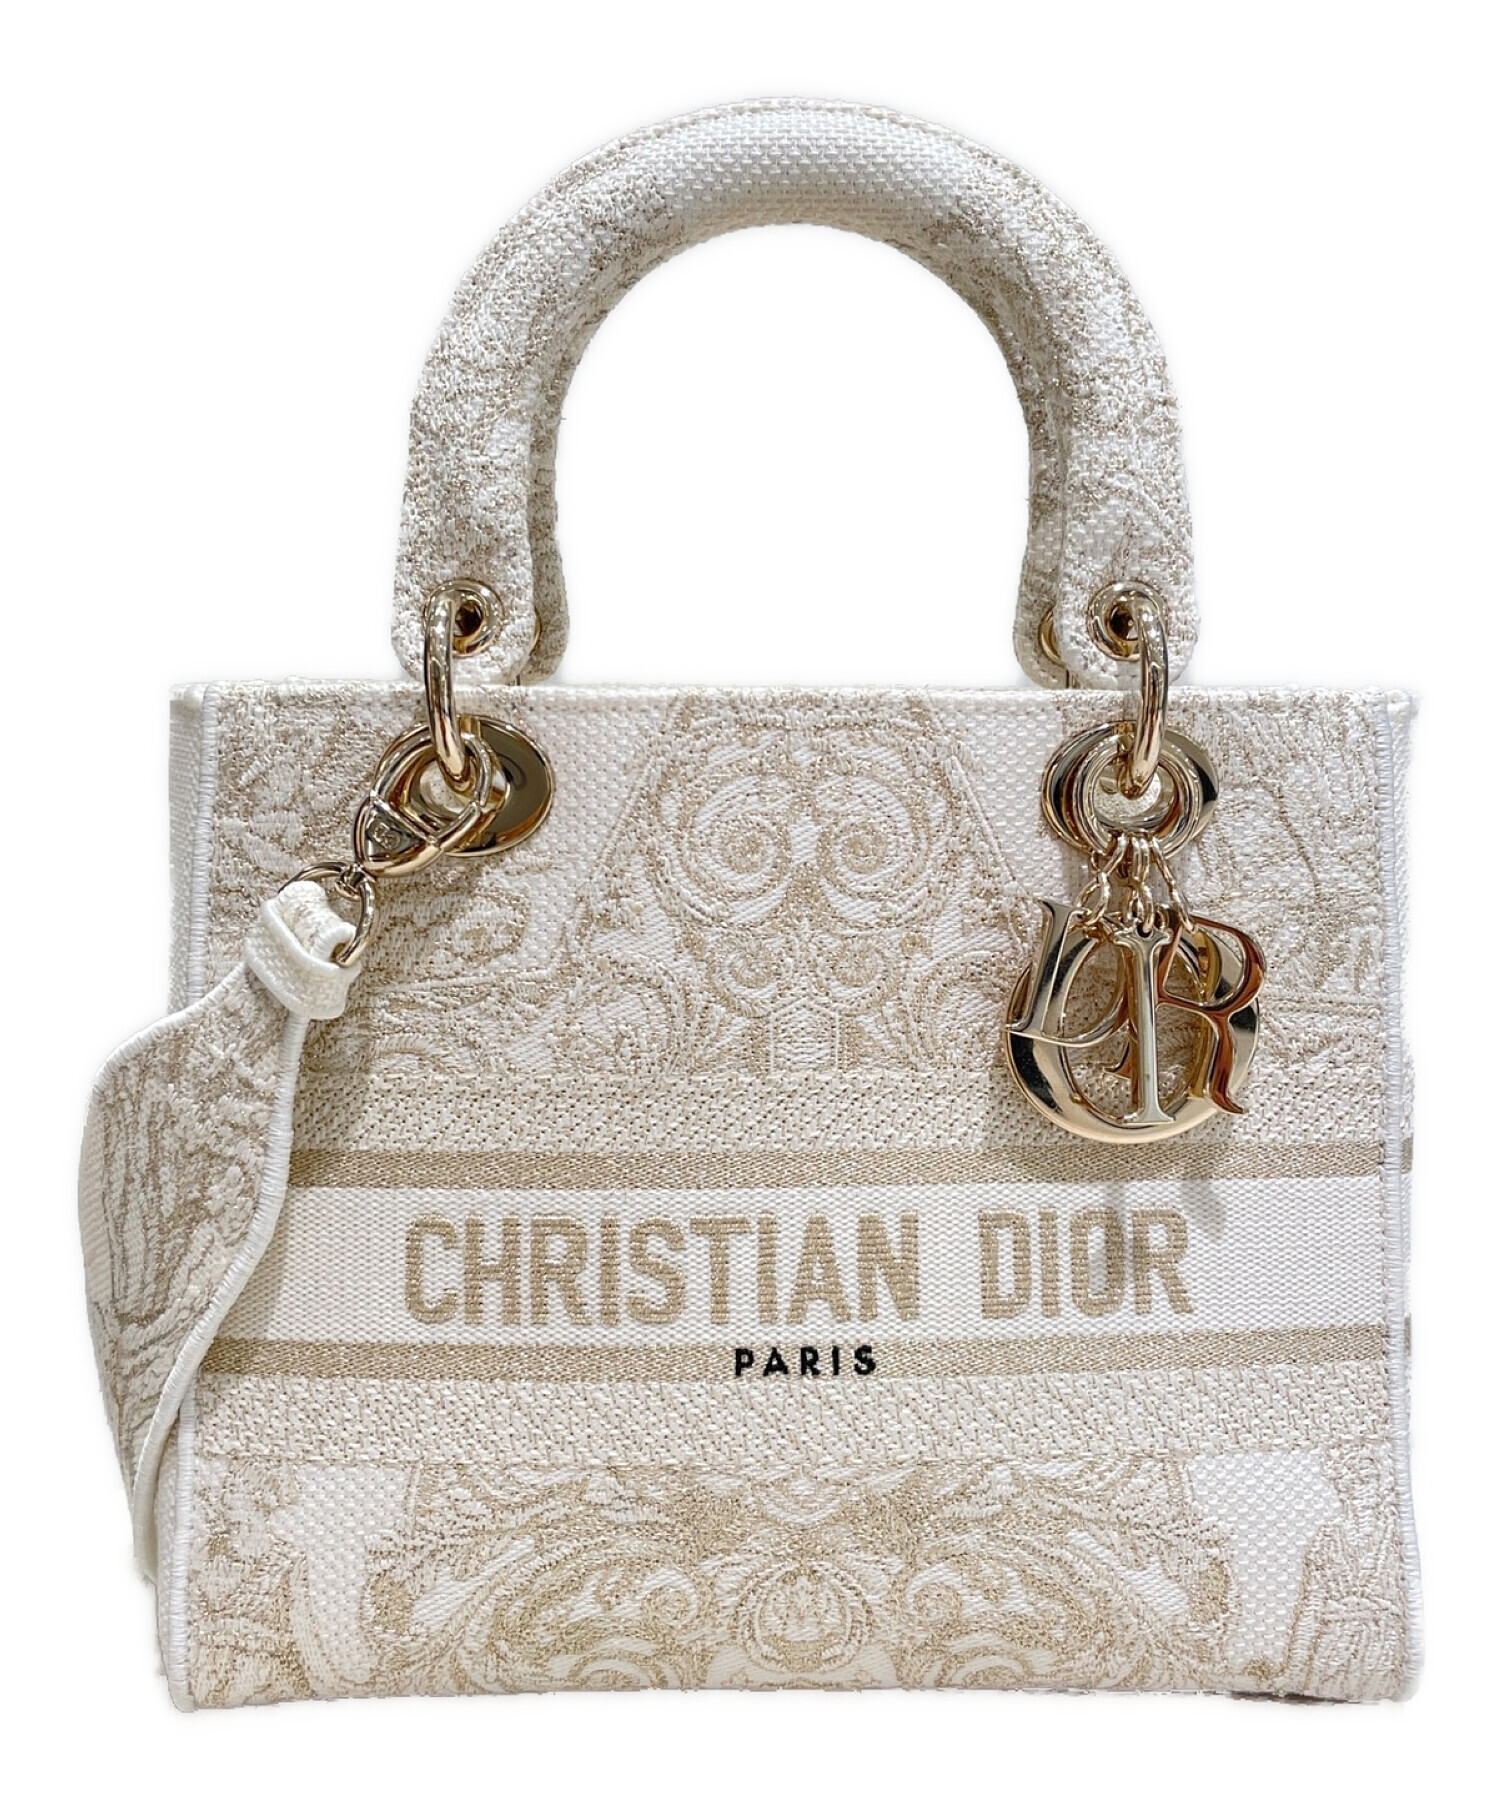 大特価❗️Christian Dior レディディオール  正規品ご検討よろしくお願い致します